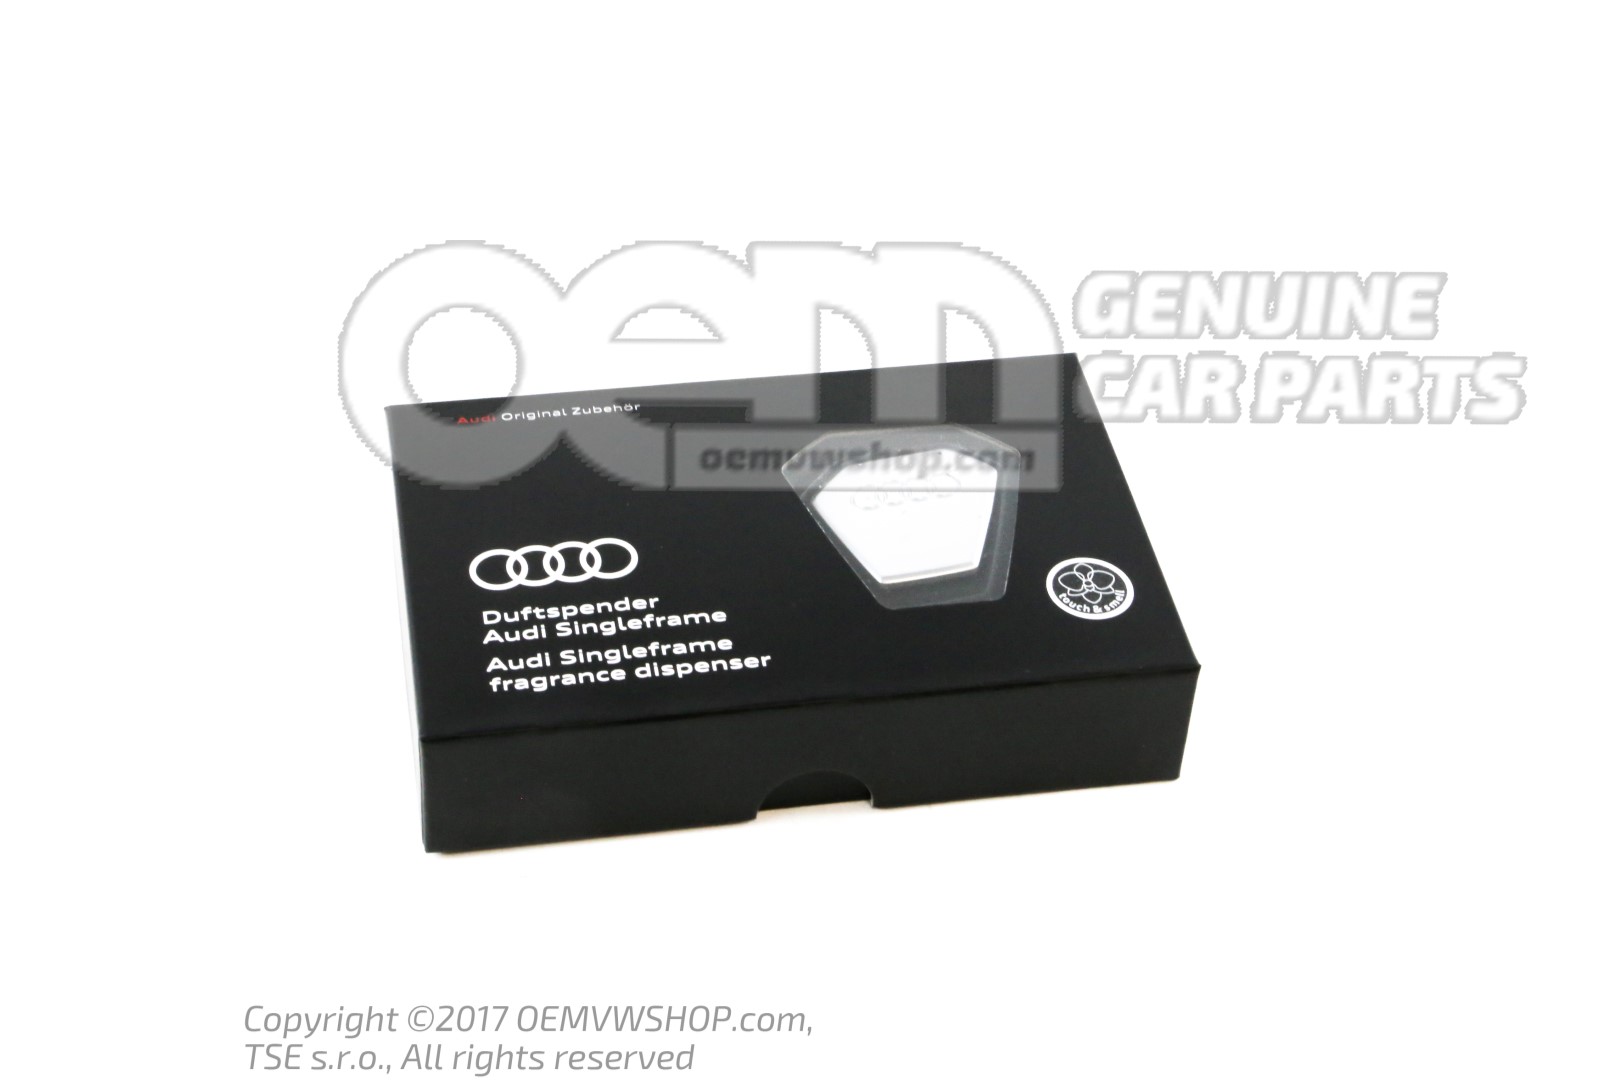 80A087009 Audi Singleframe aroma dispens scent oriental